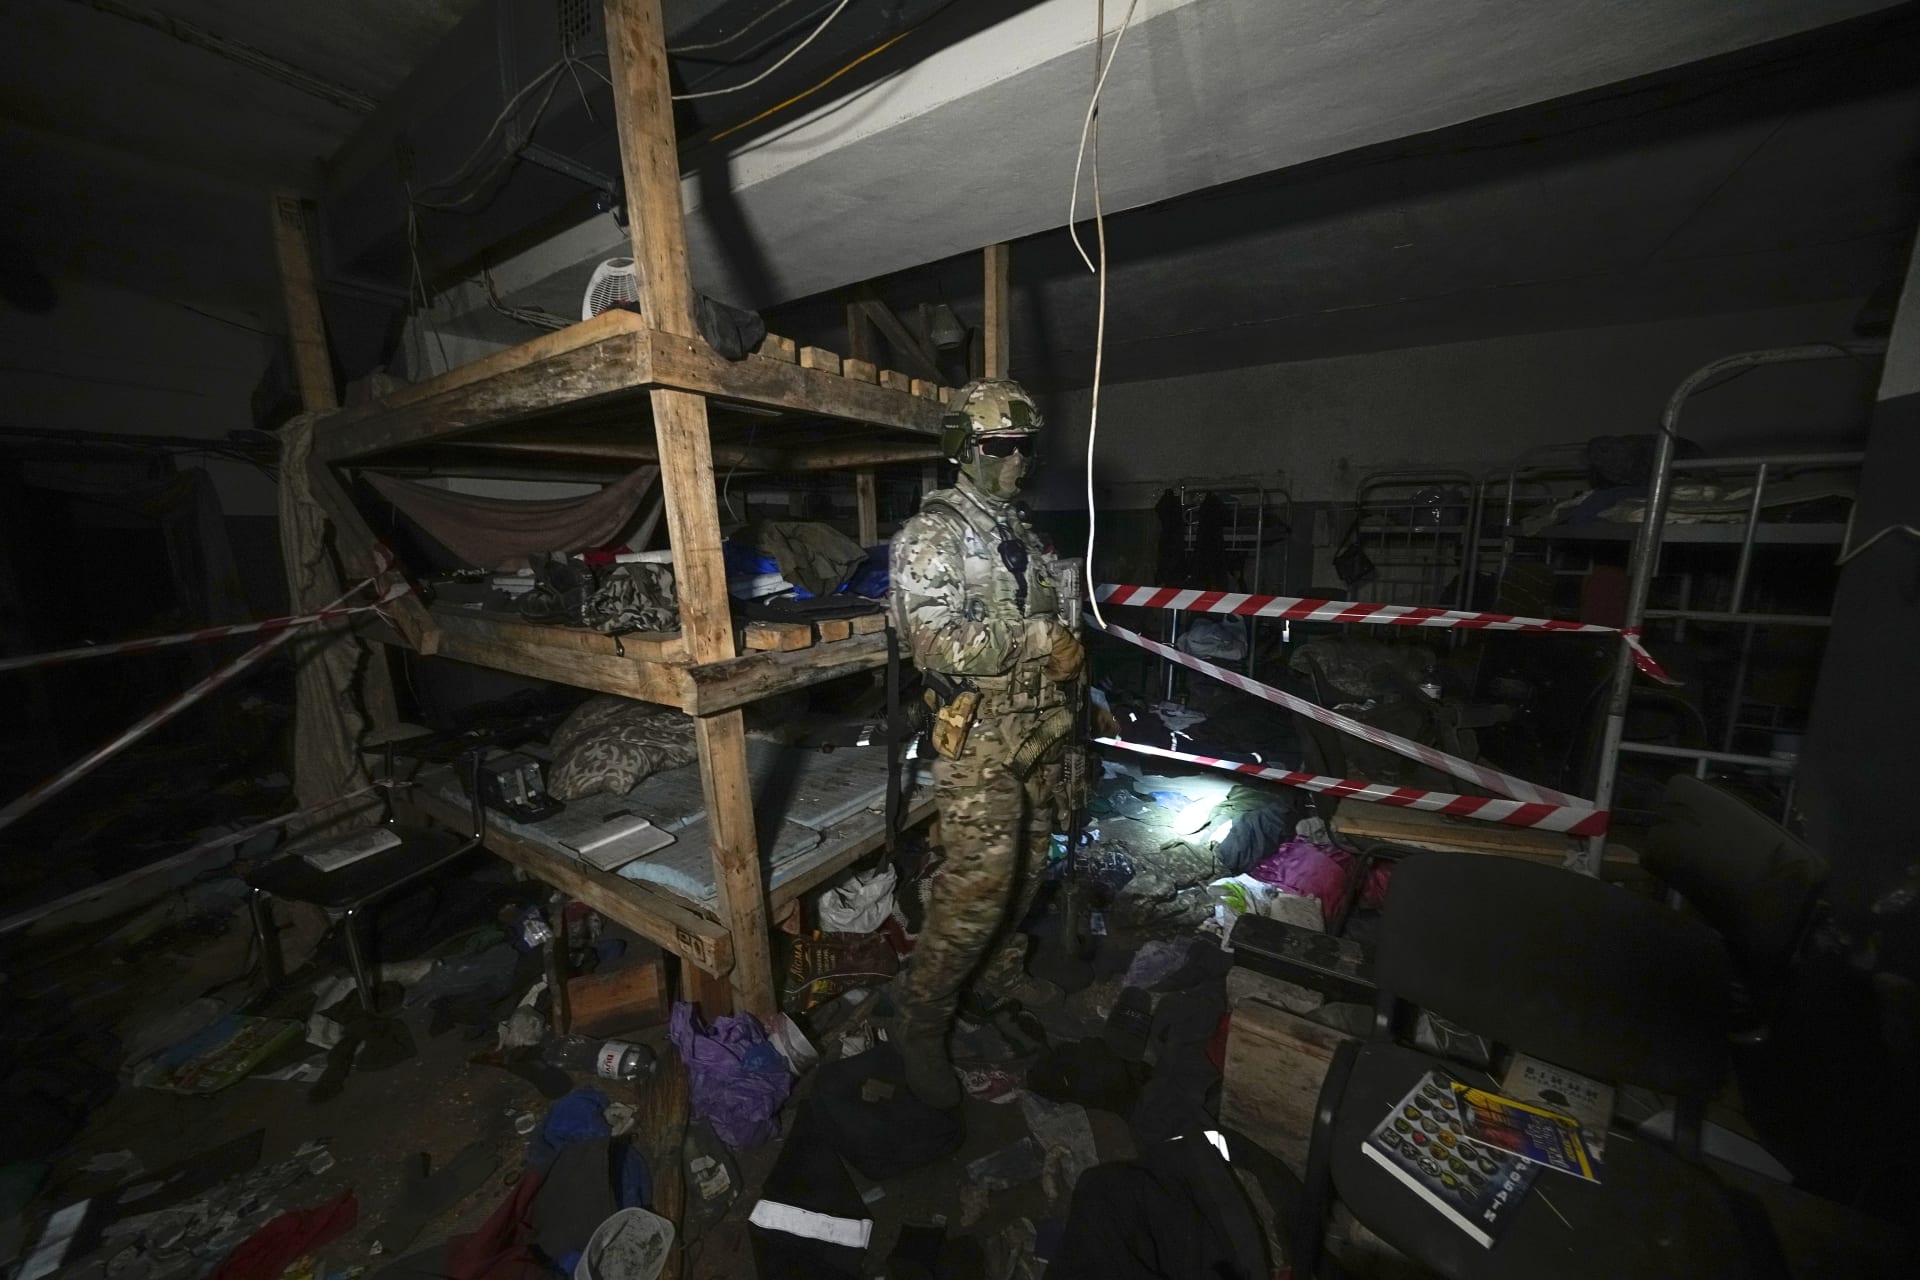 Ruský voják prozkoumává podzemní chodby oceláren Azovstal v Mariupolu. Fotografie byla pořízena během cesty pro novináře, kterou na okupovaném území organizovalo ruské ministerstvo obrany